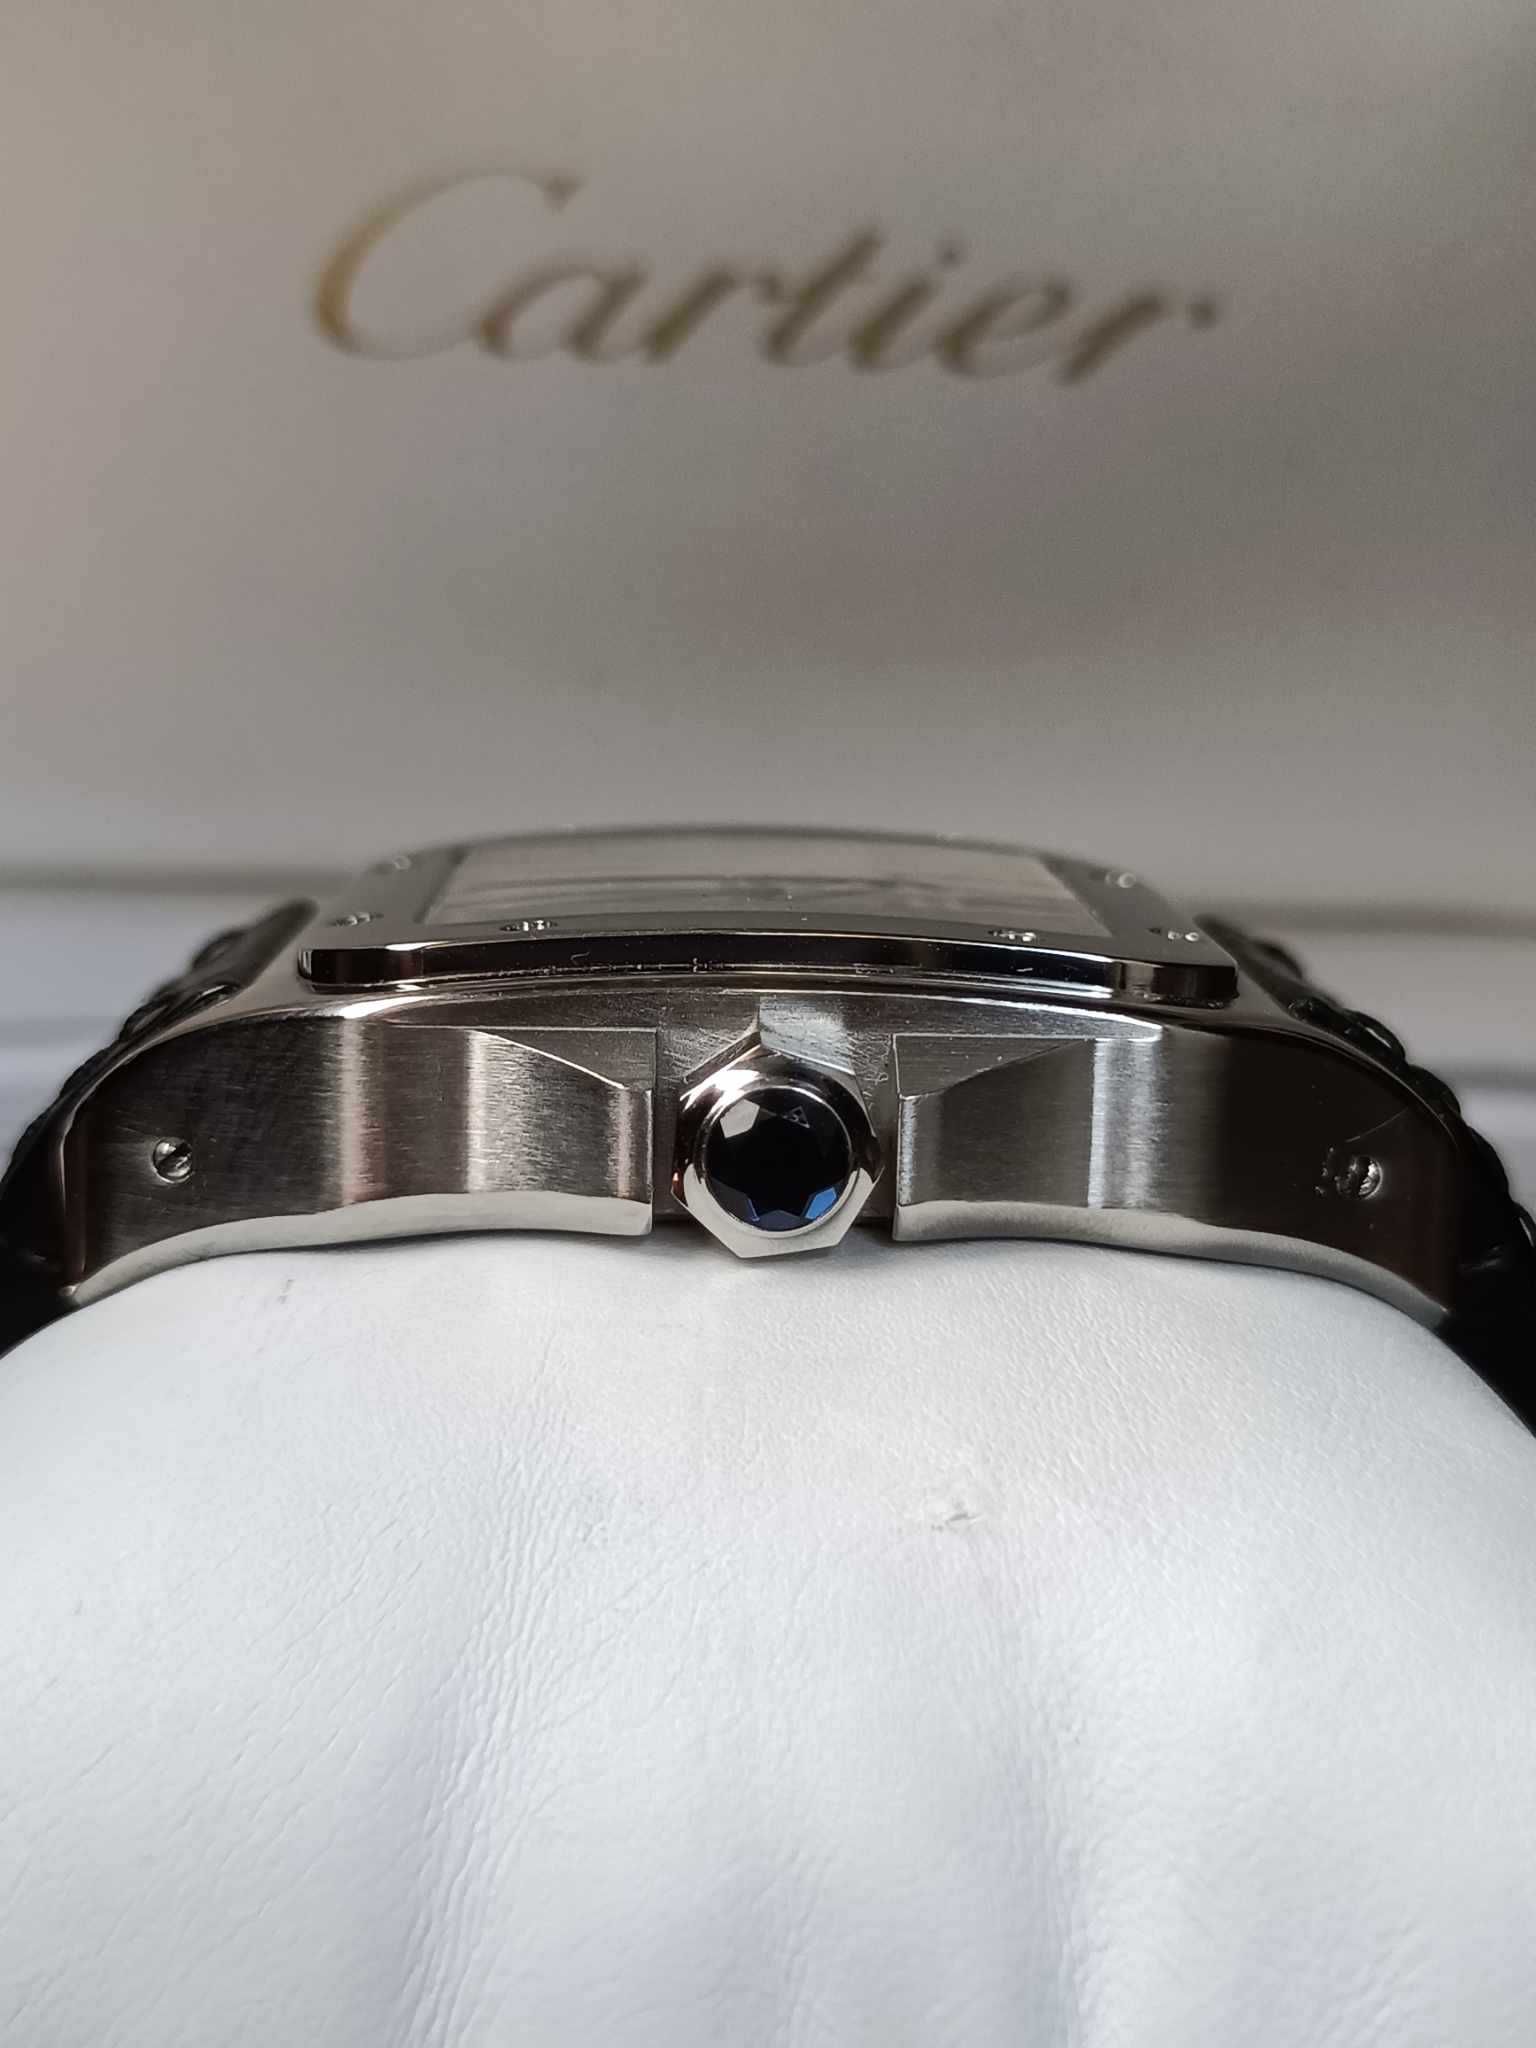 Cartier Santos 100 Xl 2656